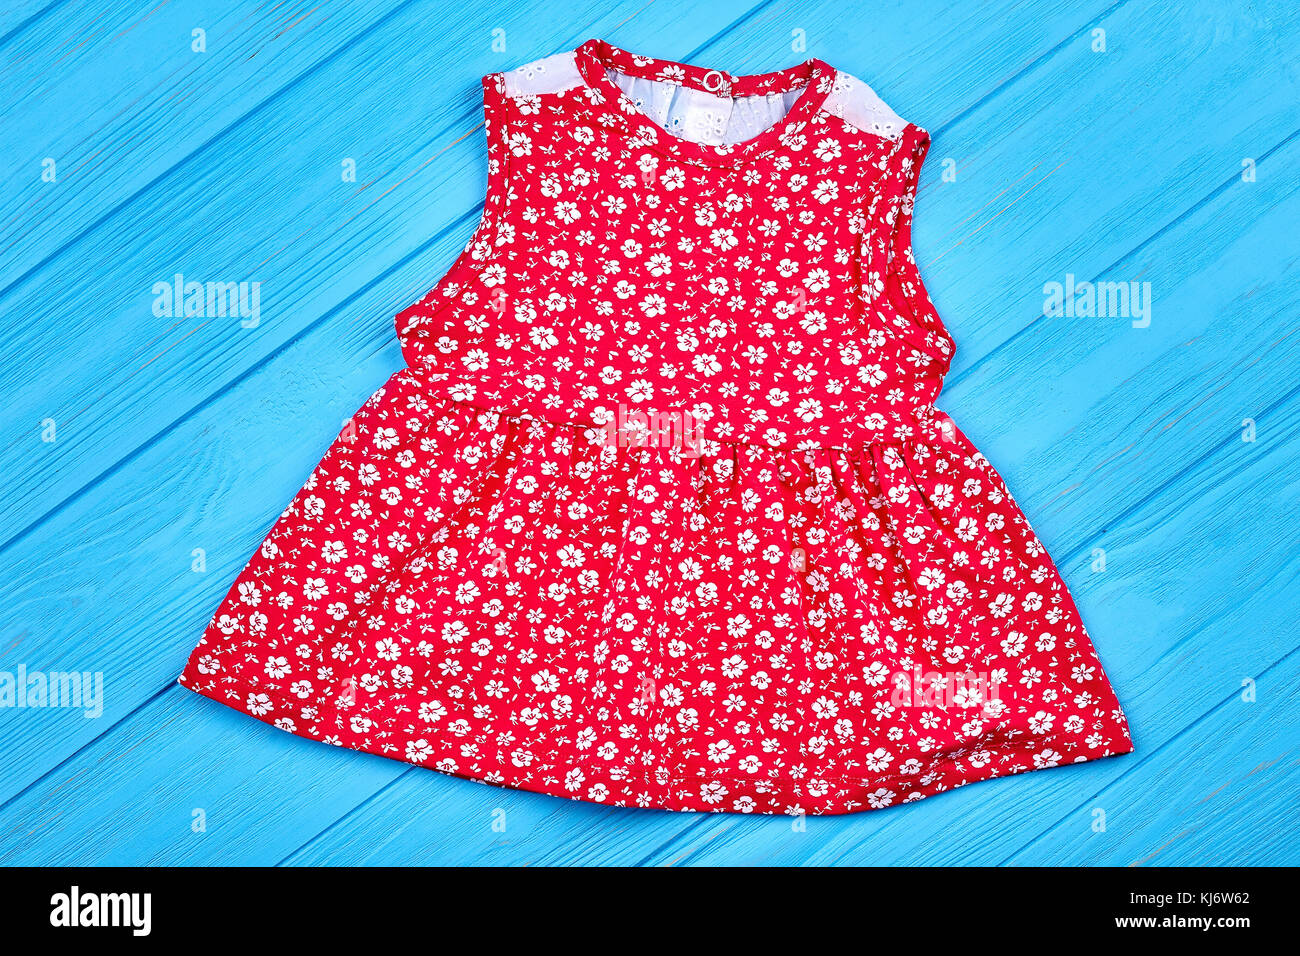 Rot Baumwolle Baby - Mädchen Sommer Kleid. schöne Baby Girl Dress mit  Muster der kleinen weißen Blumen auf blau Holz- backgrond. Natürliche baby  Kleid auf Sal Stockfotografie - Alamy